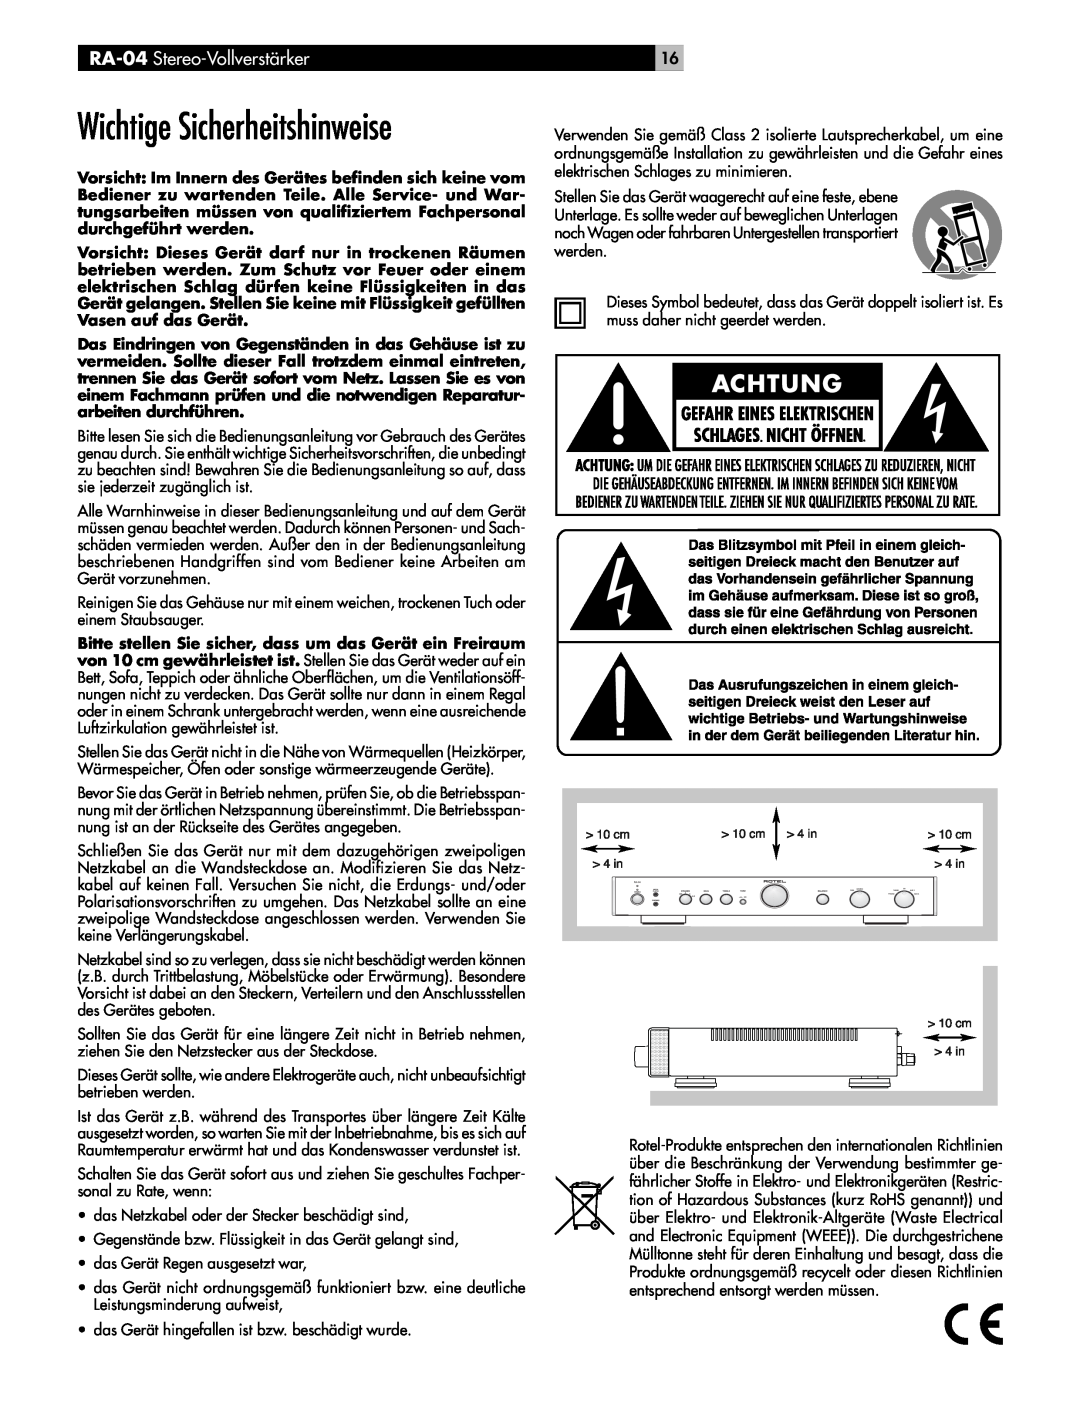 Rotel owner manual Wichtige Sicherheitshinweise, RA-04 Stereo-Vollverstärker 